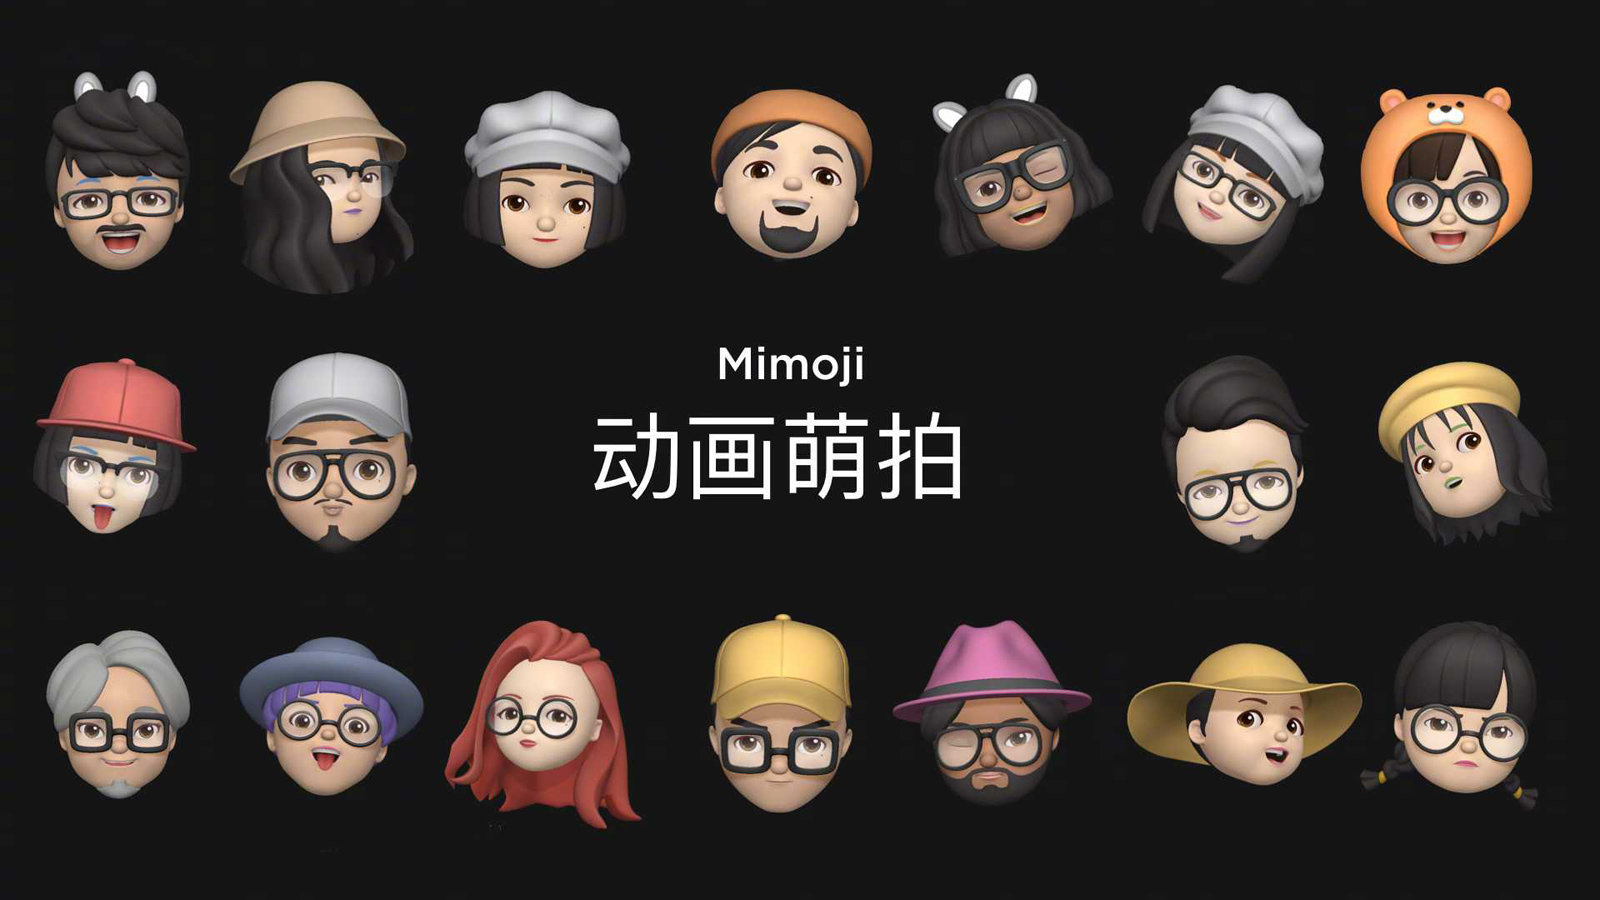 Xiaomi reveals Mimoji 3D avatars